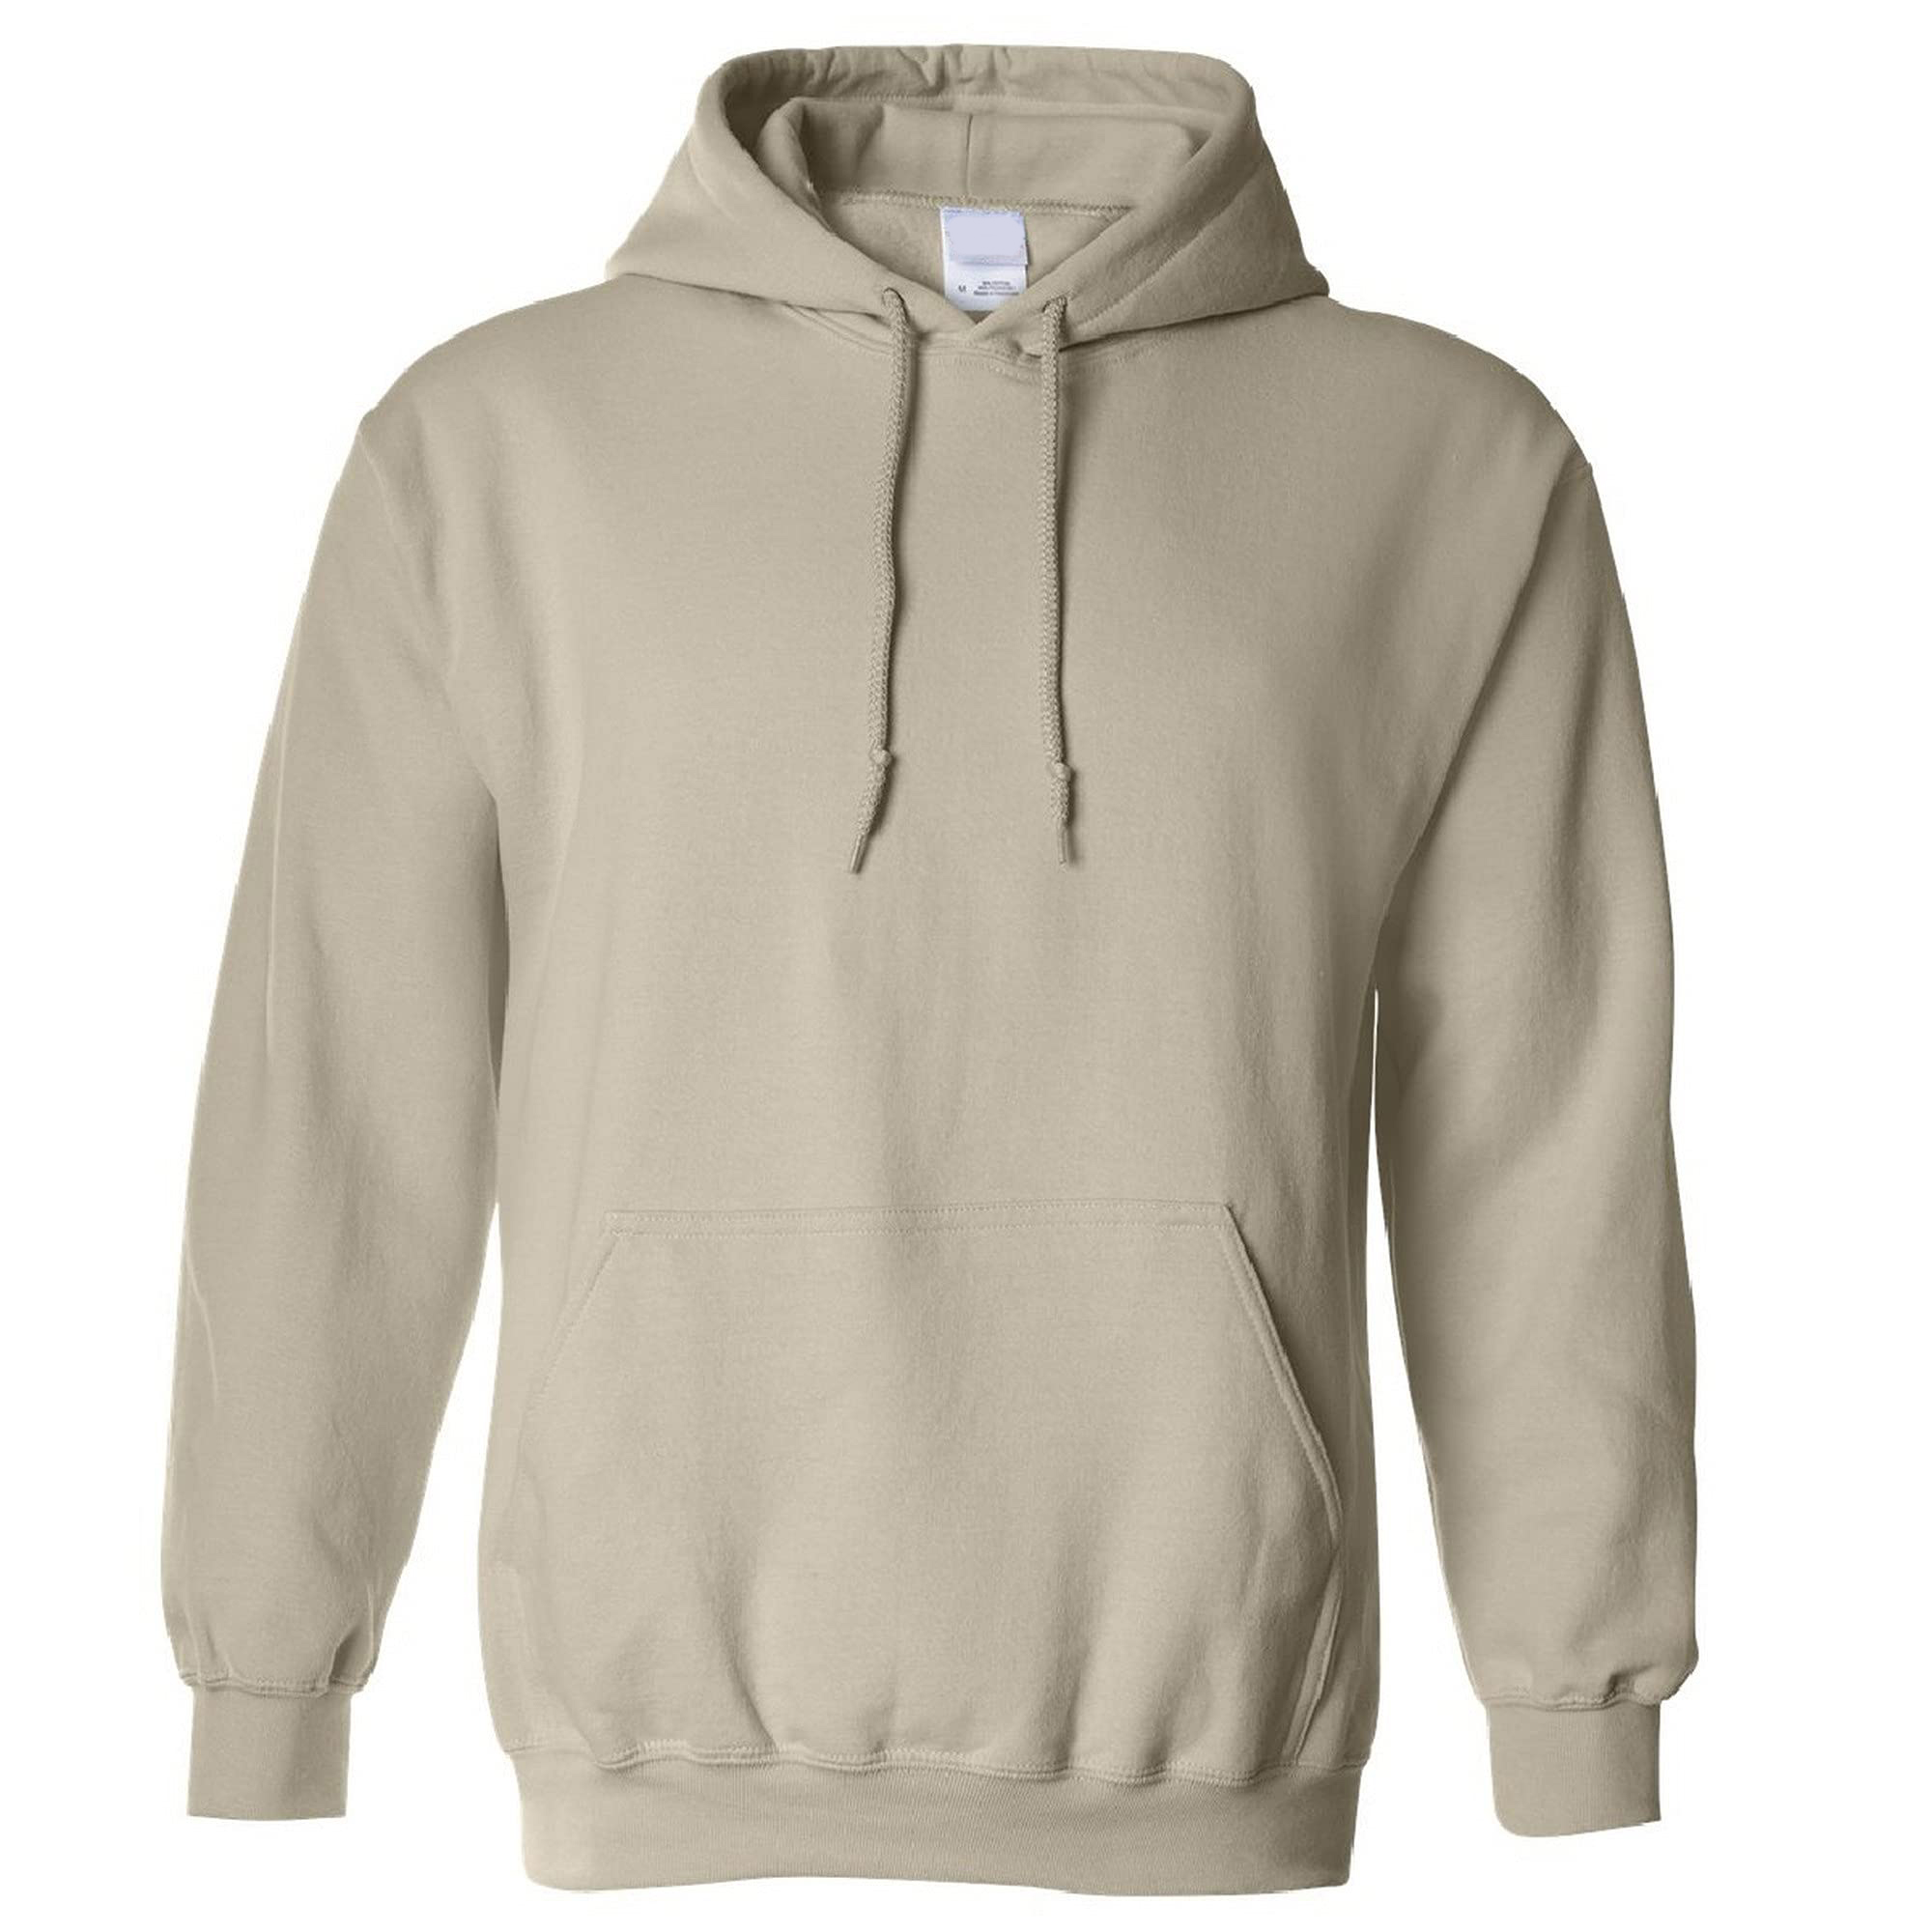 Unisex sweatshirt front rendering